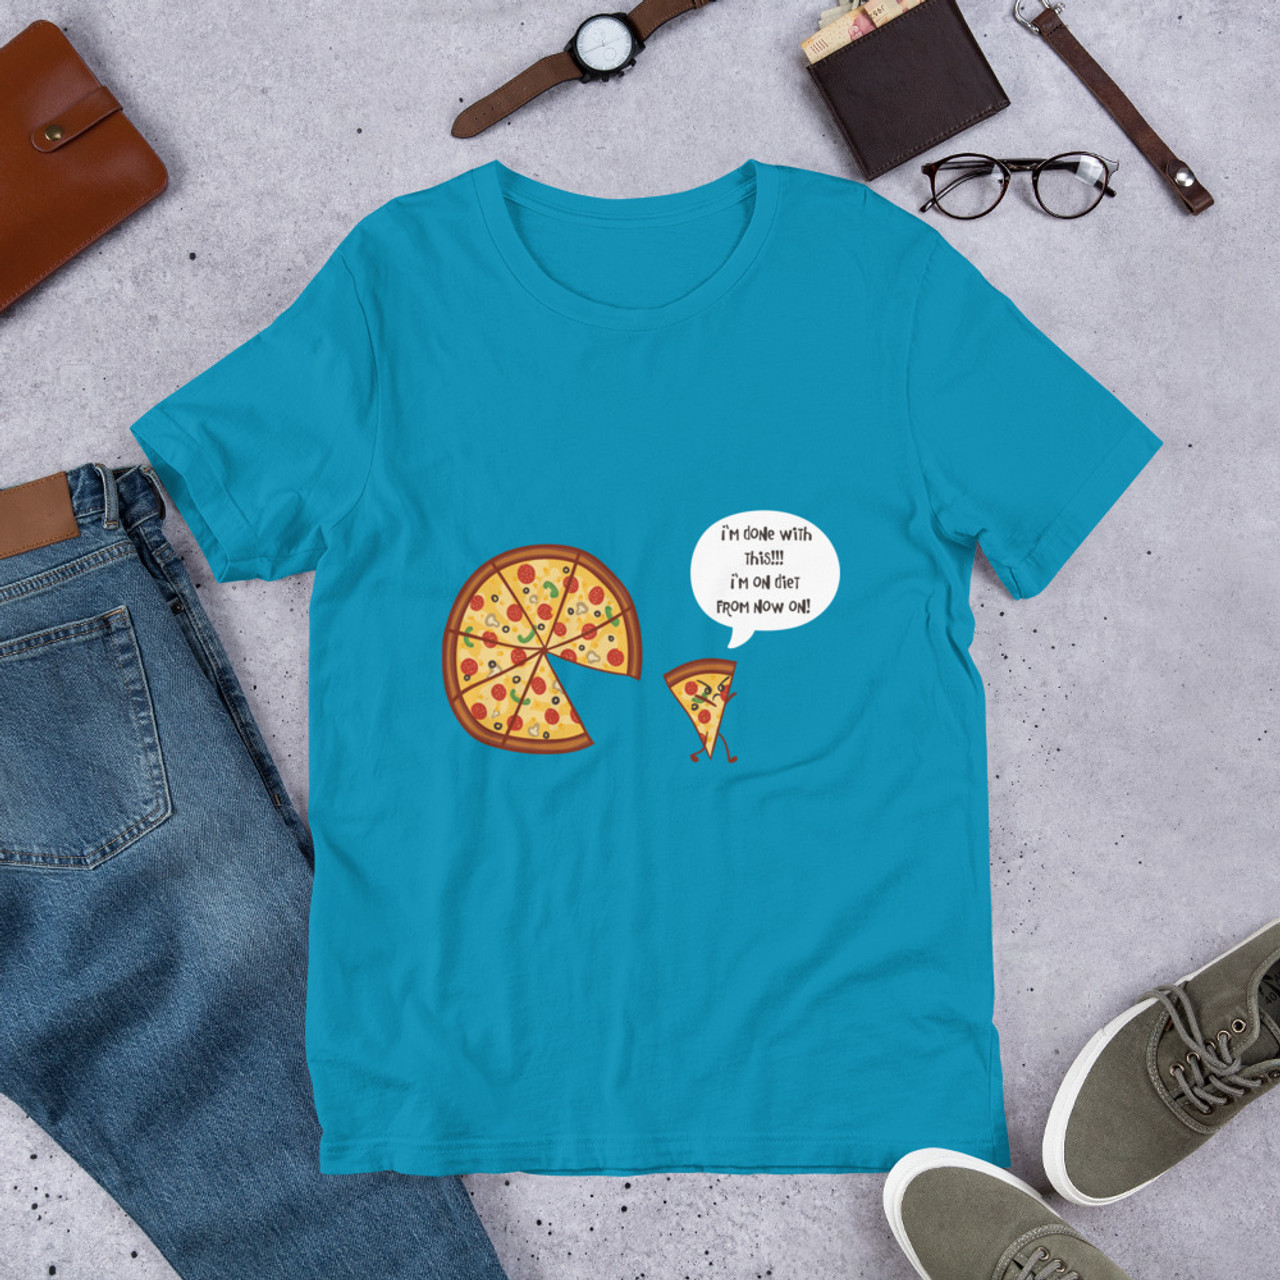 Aqua T-Shirt - Bella + Canvas 3001 Angry Pizza